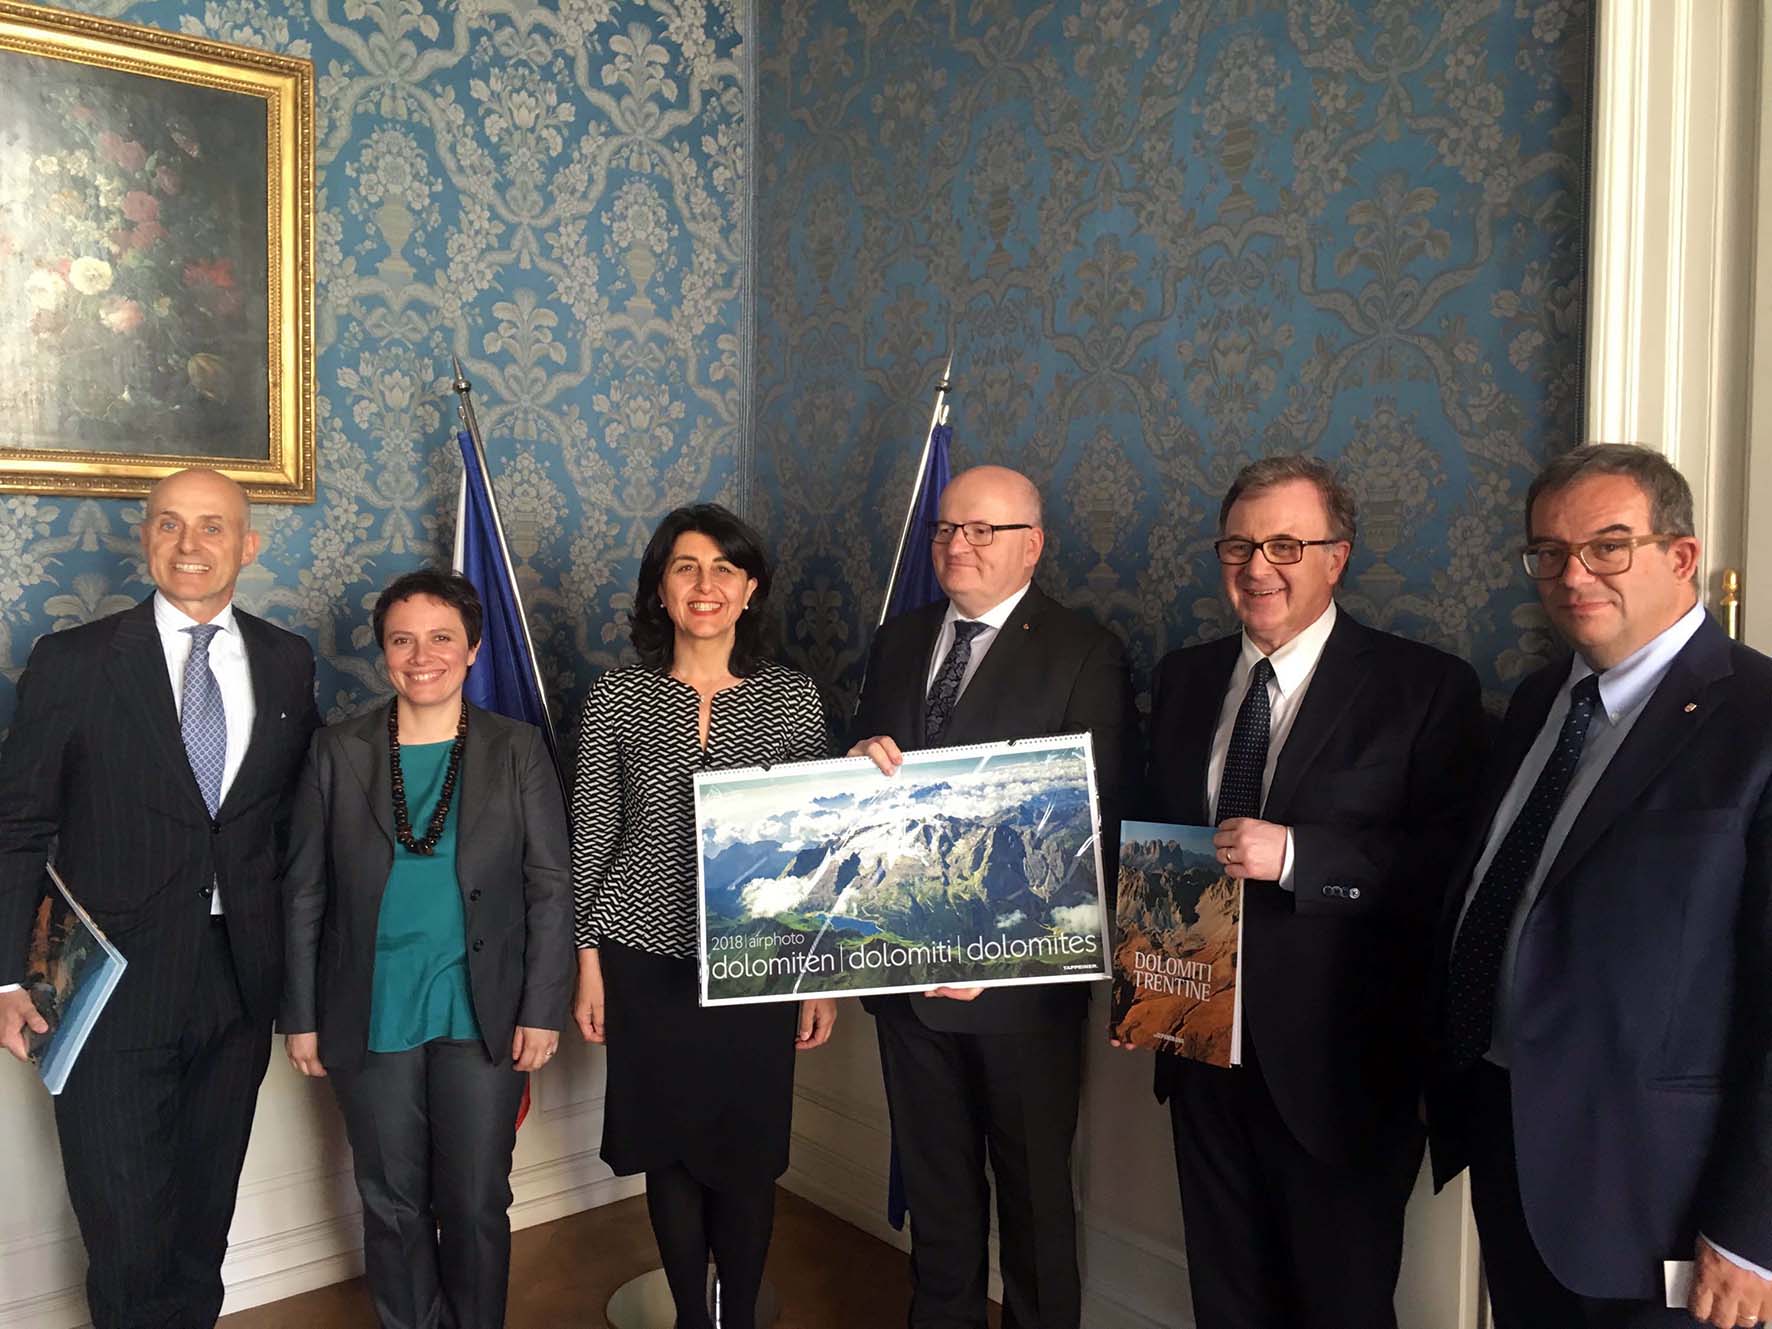 Mariagrazia Santoro pres Fondazione Dolomiti UNESCO con Mauro Gilmozzi incontra Daniel Herman Min Cultura Rep Ceca Praga